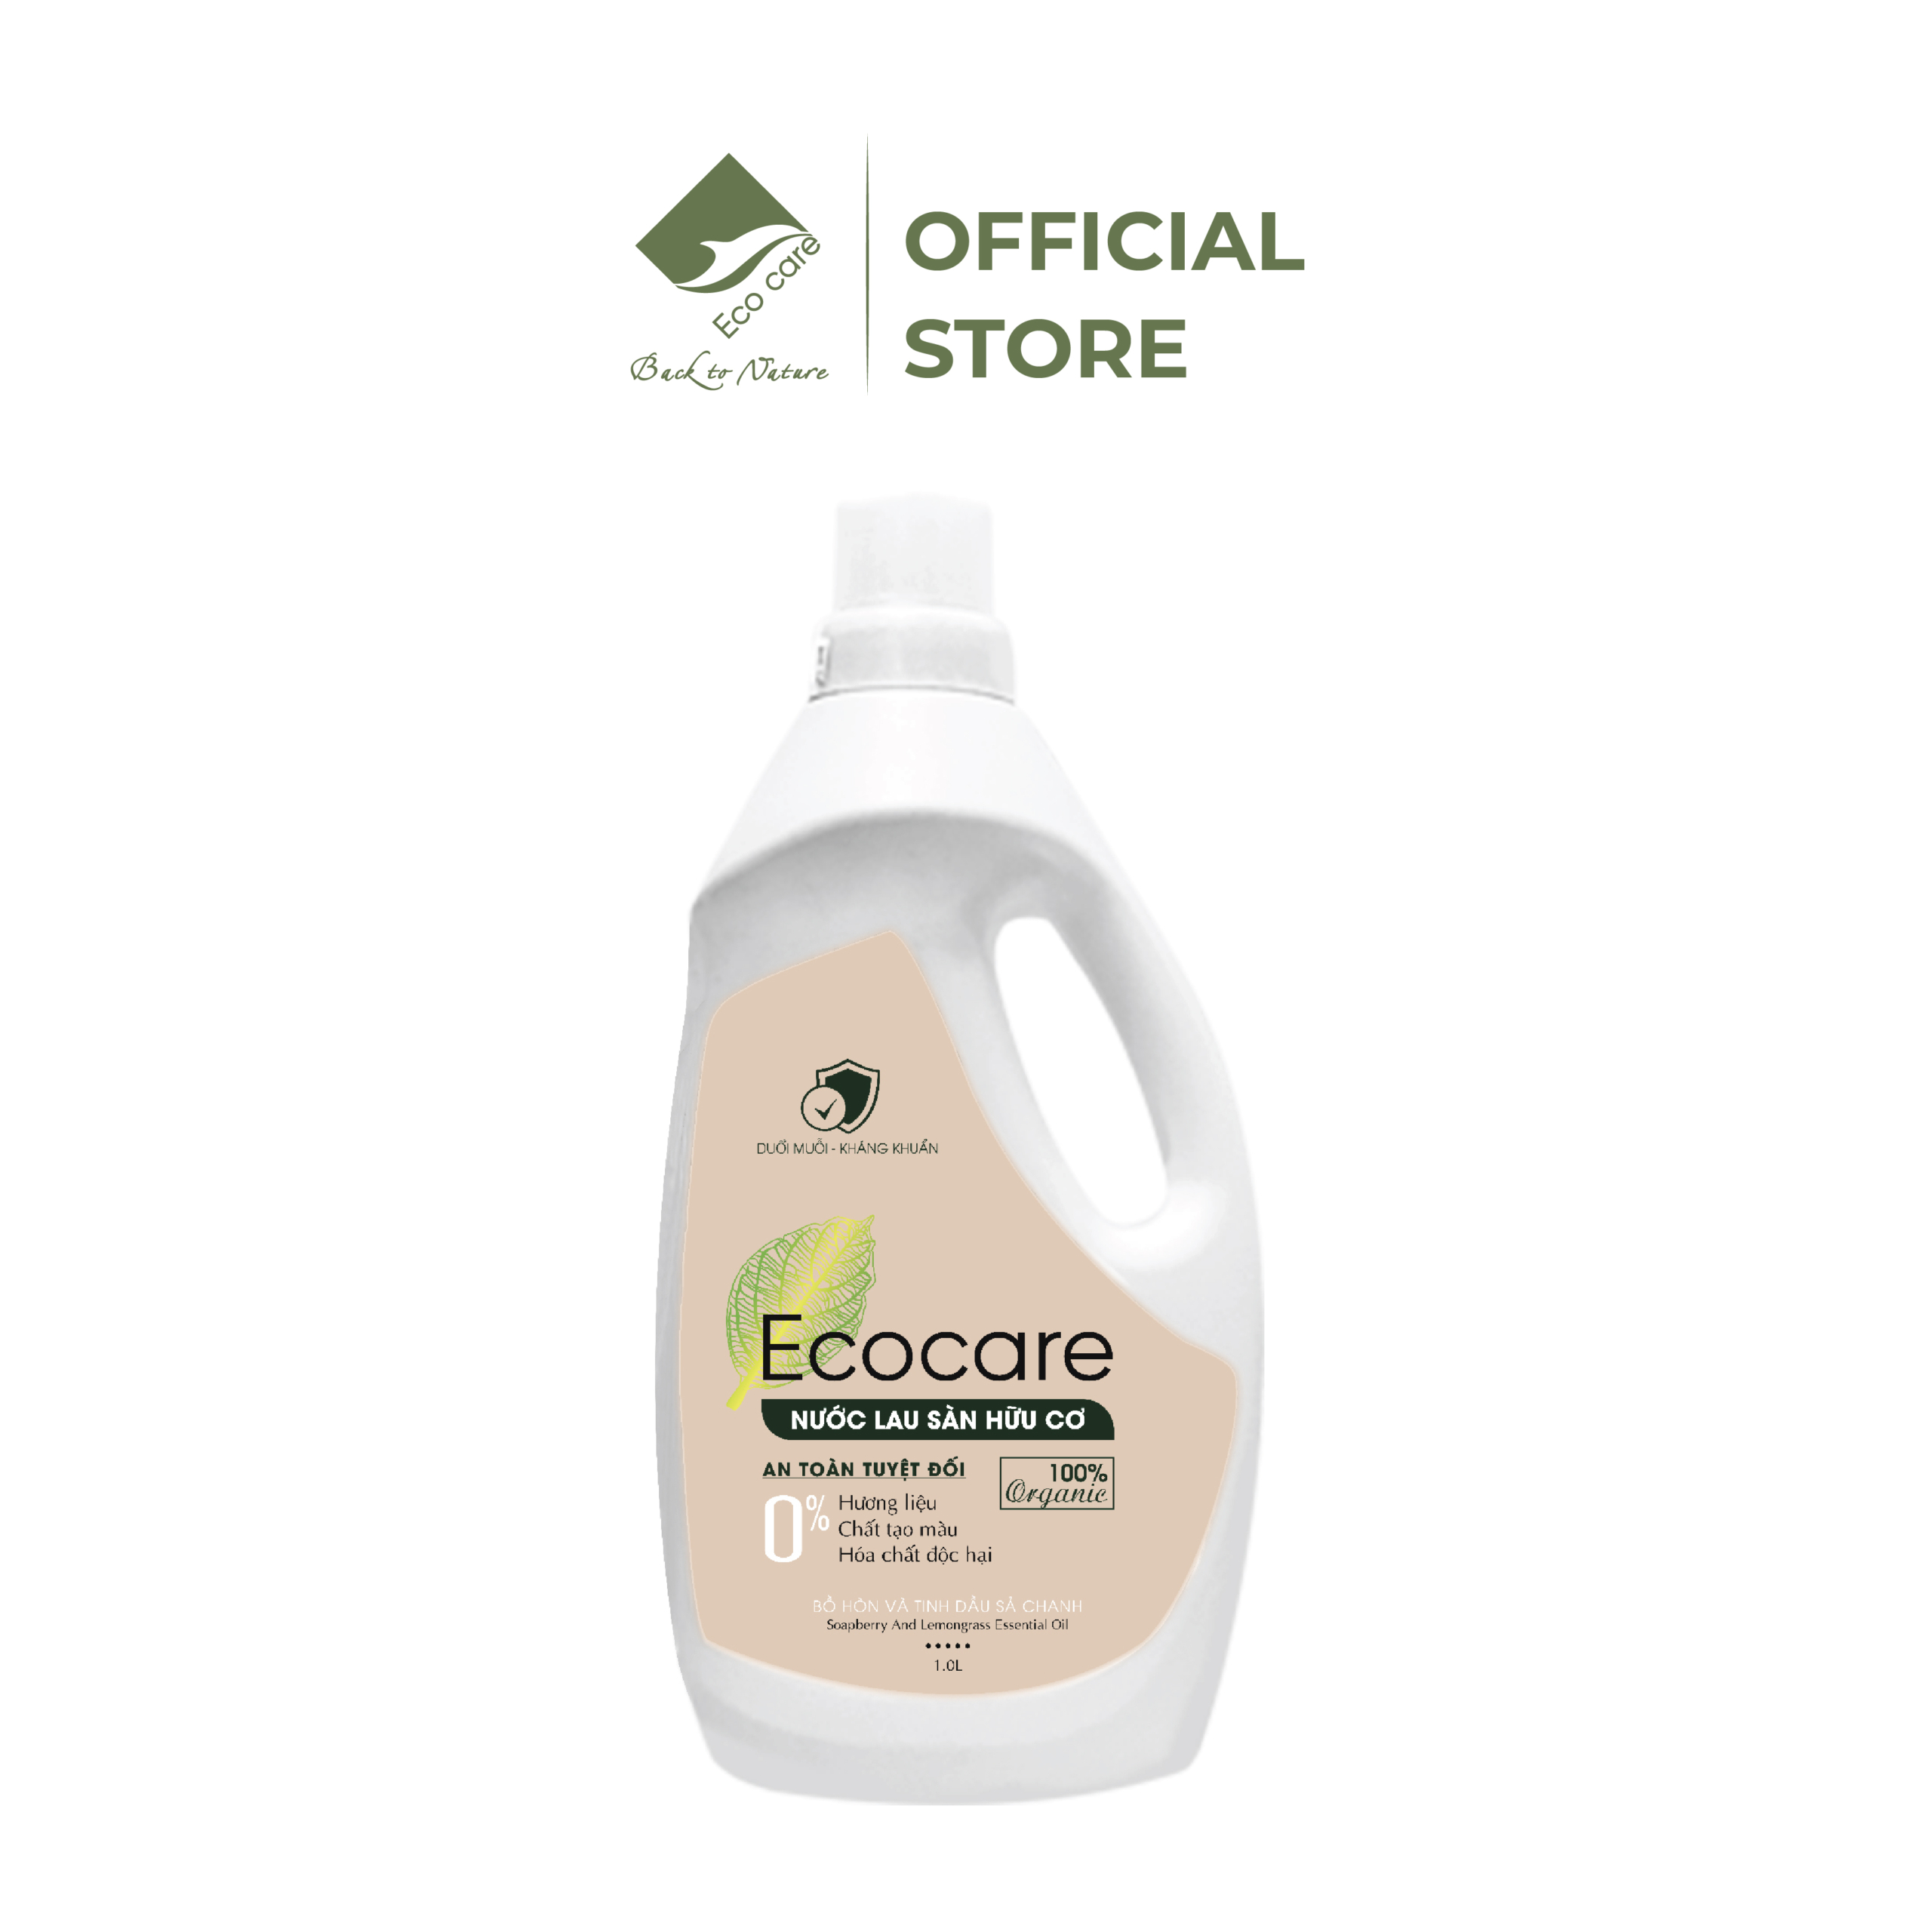 Nước lau sàn nhà hữu cơ bồ hòn (Ecocare) - hương sả chanh ảnh 2